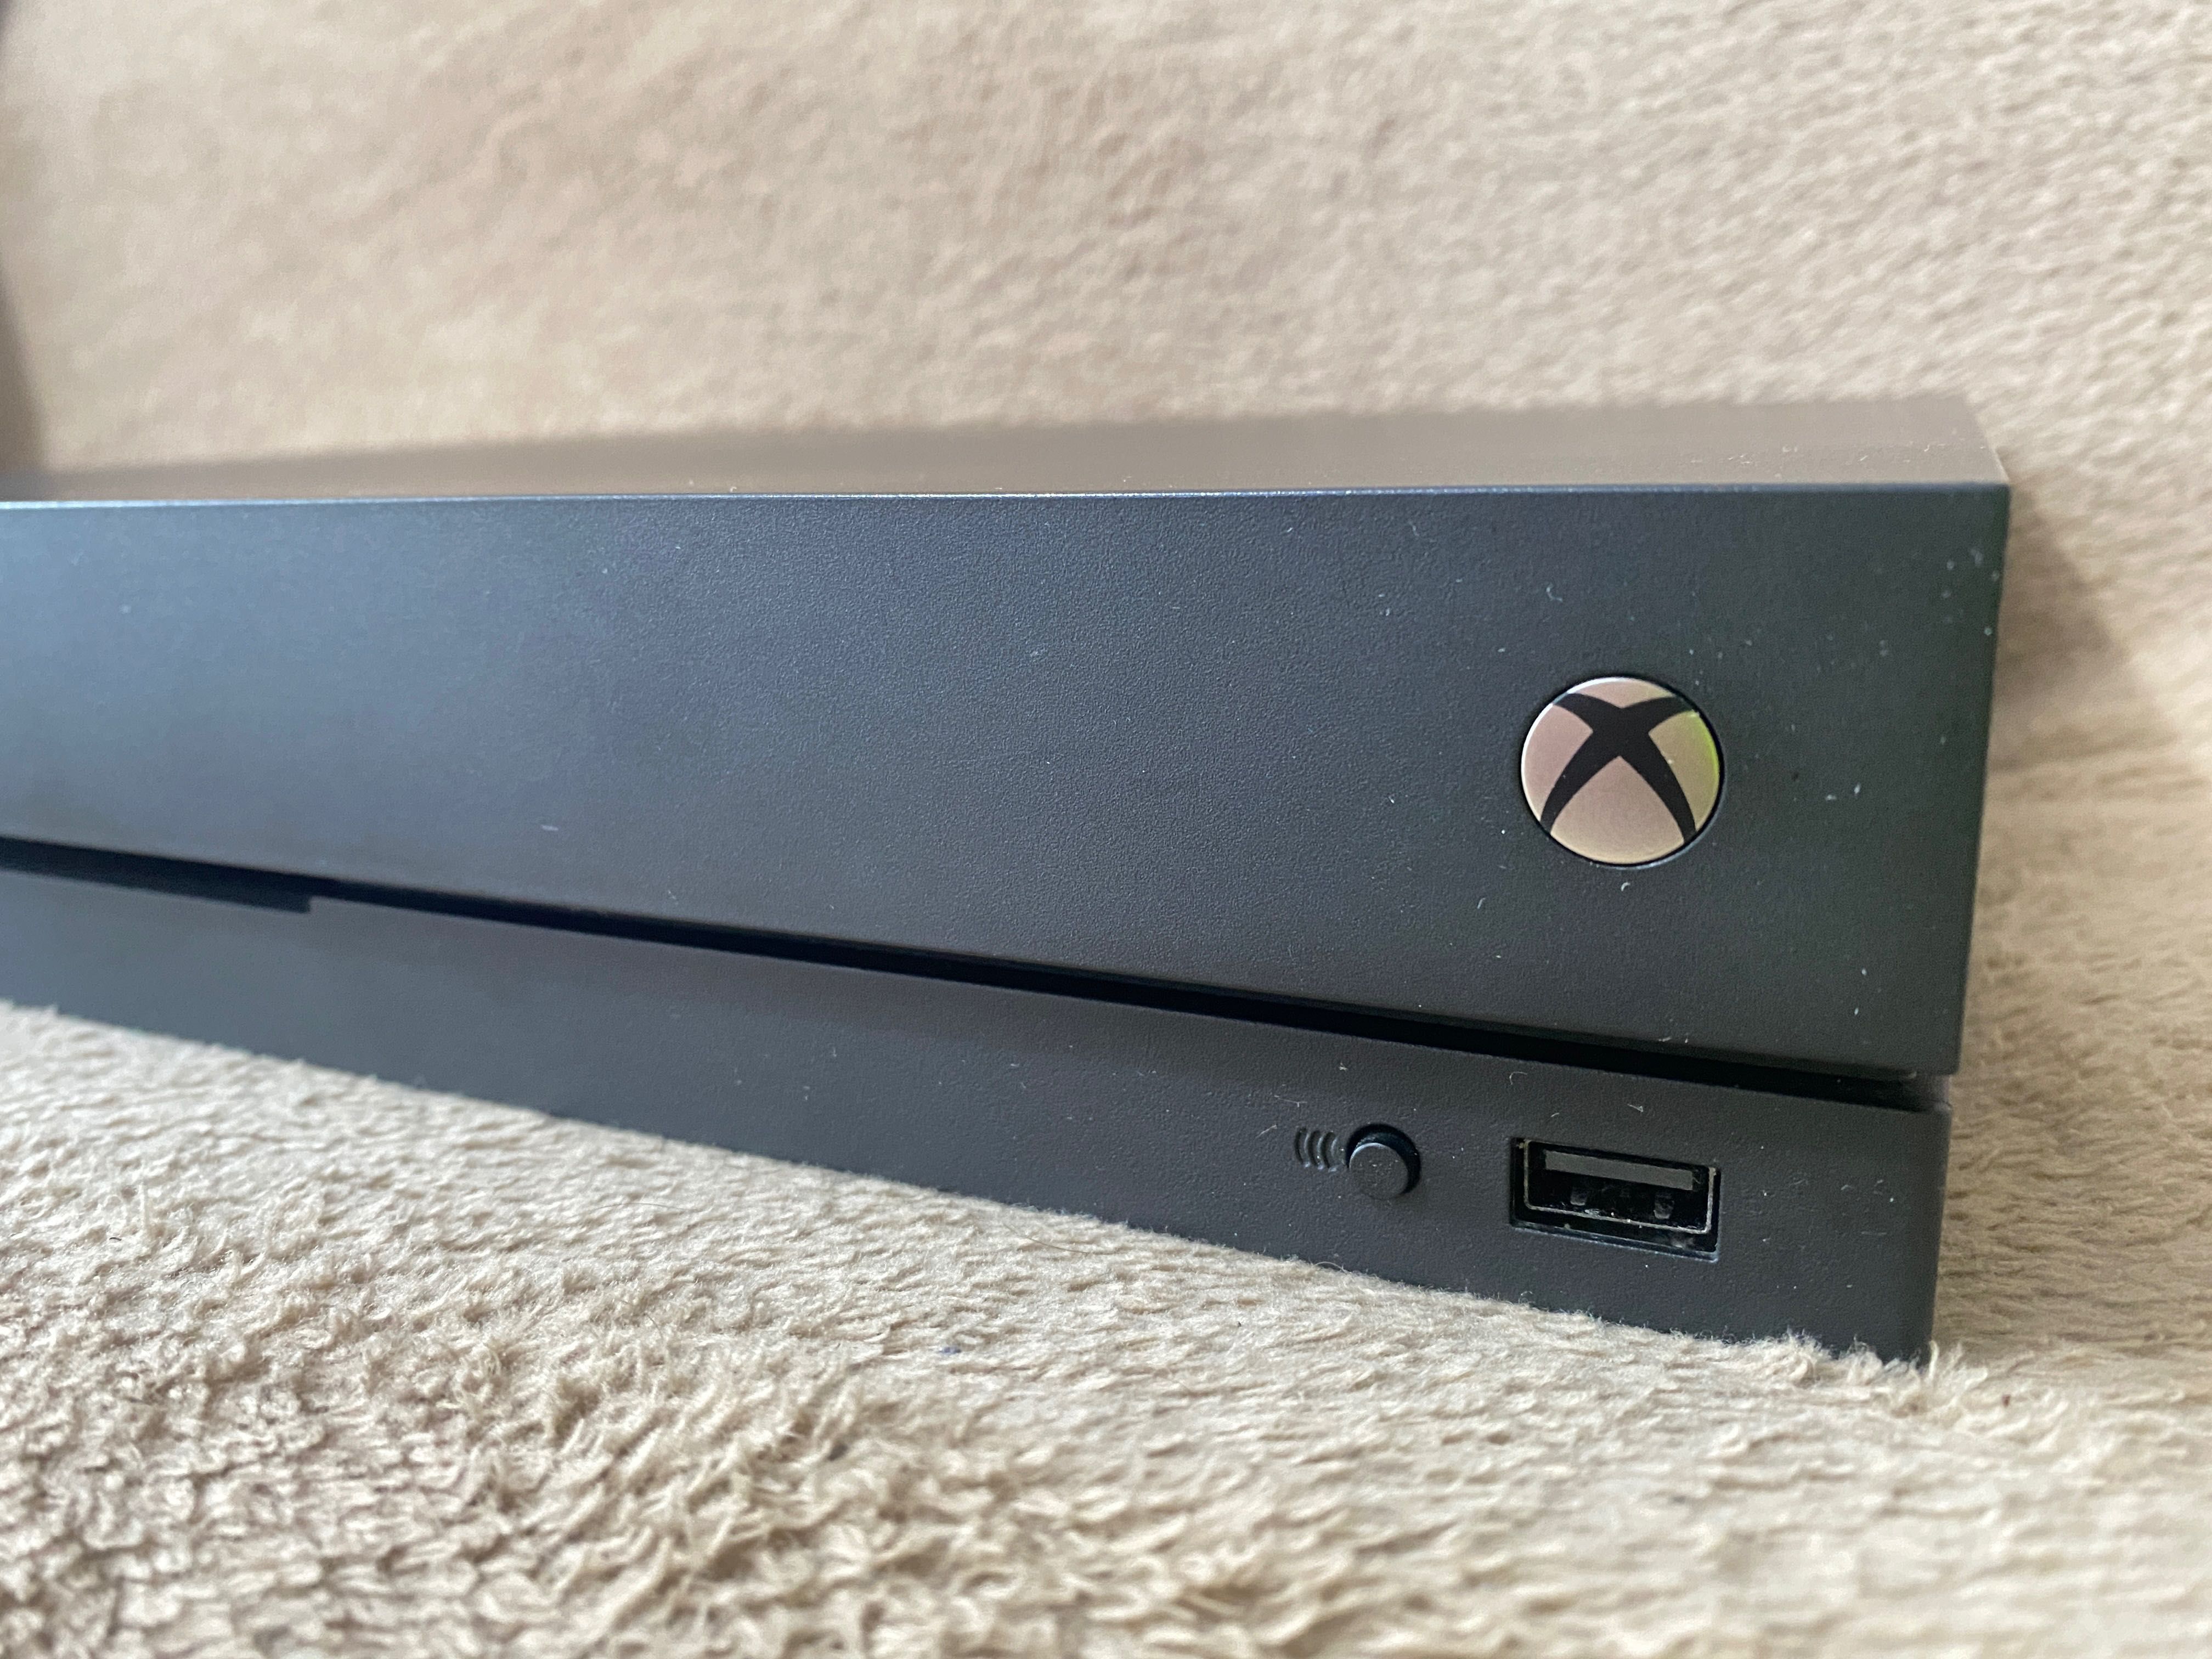 Xbox One X 1 terabyte